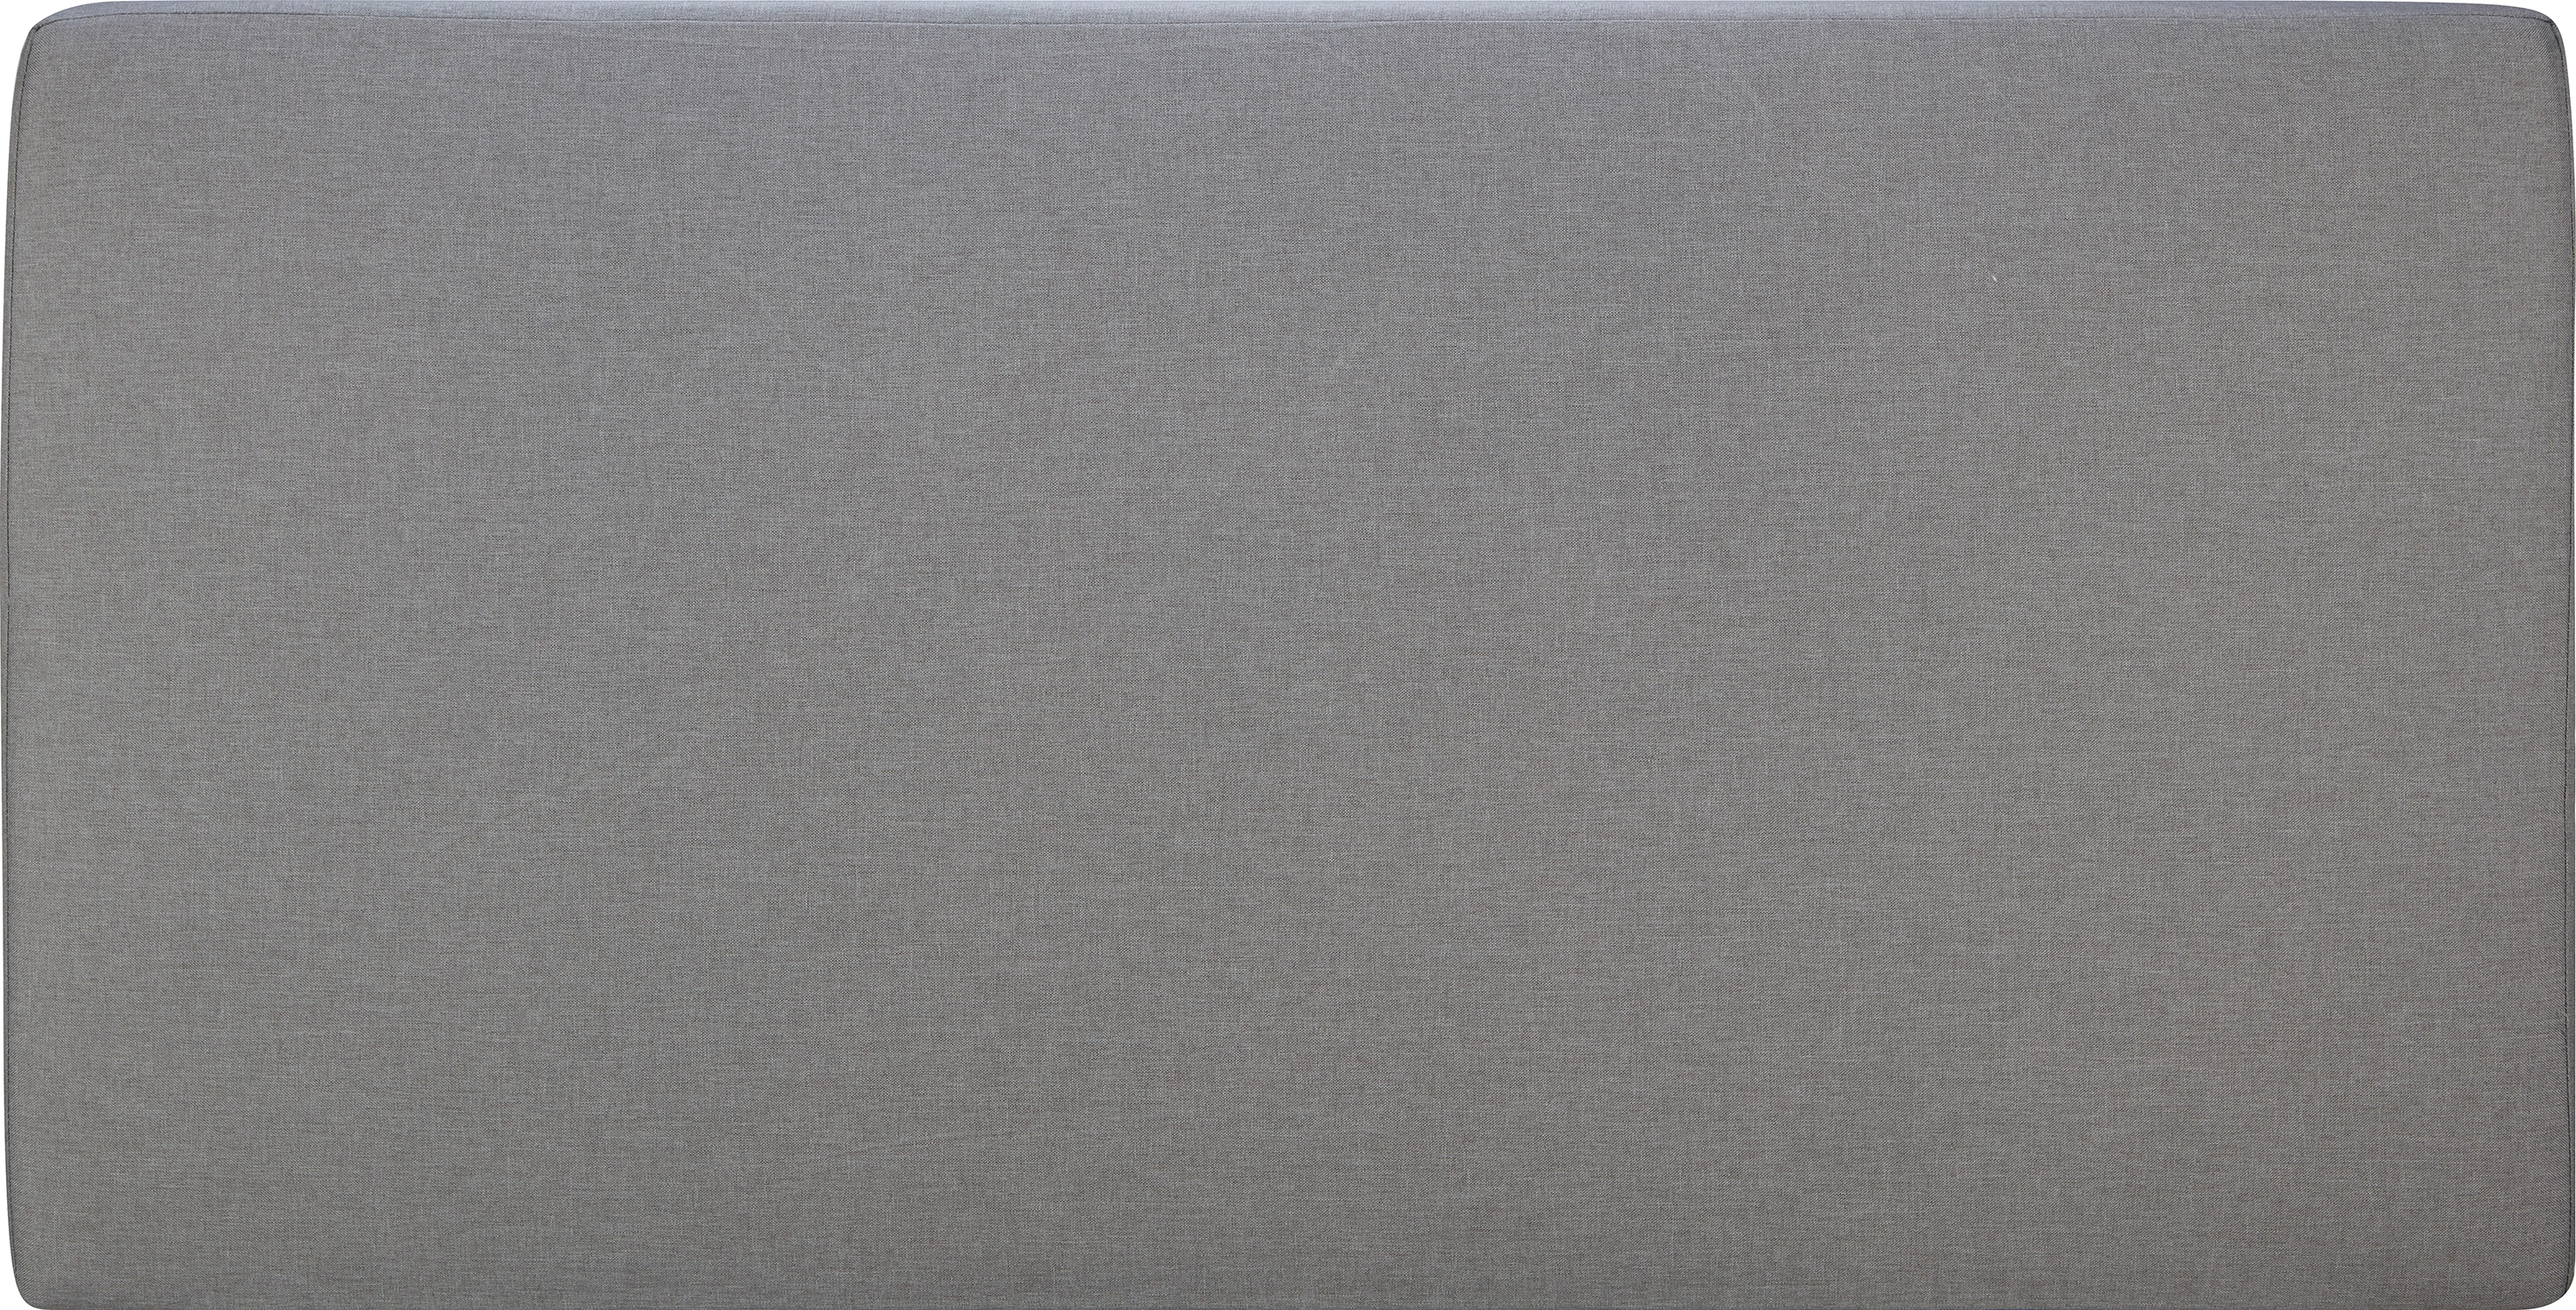 Cuscino seduta per poltrona da esterno Olea grigio 84x64x9 cm